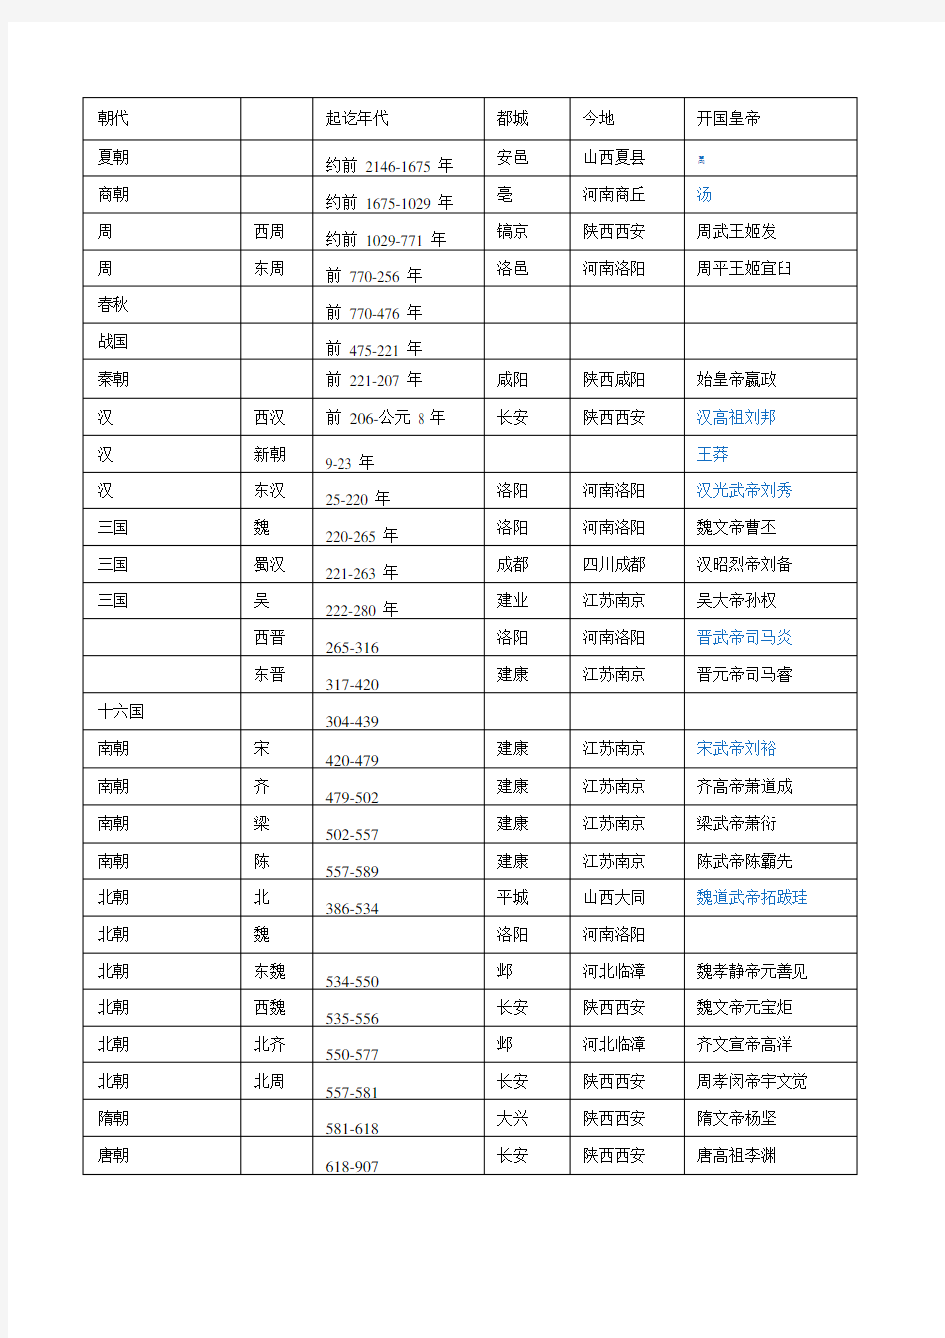 中国历史朝代口诀及其顺序表